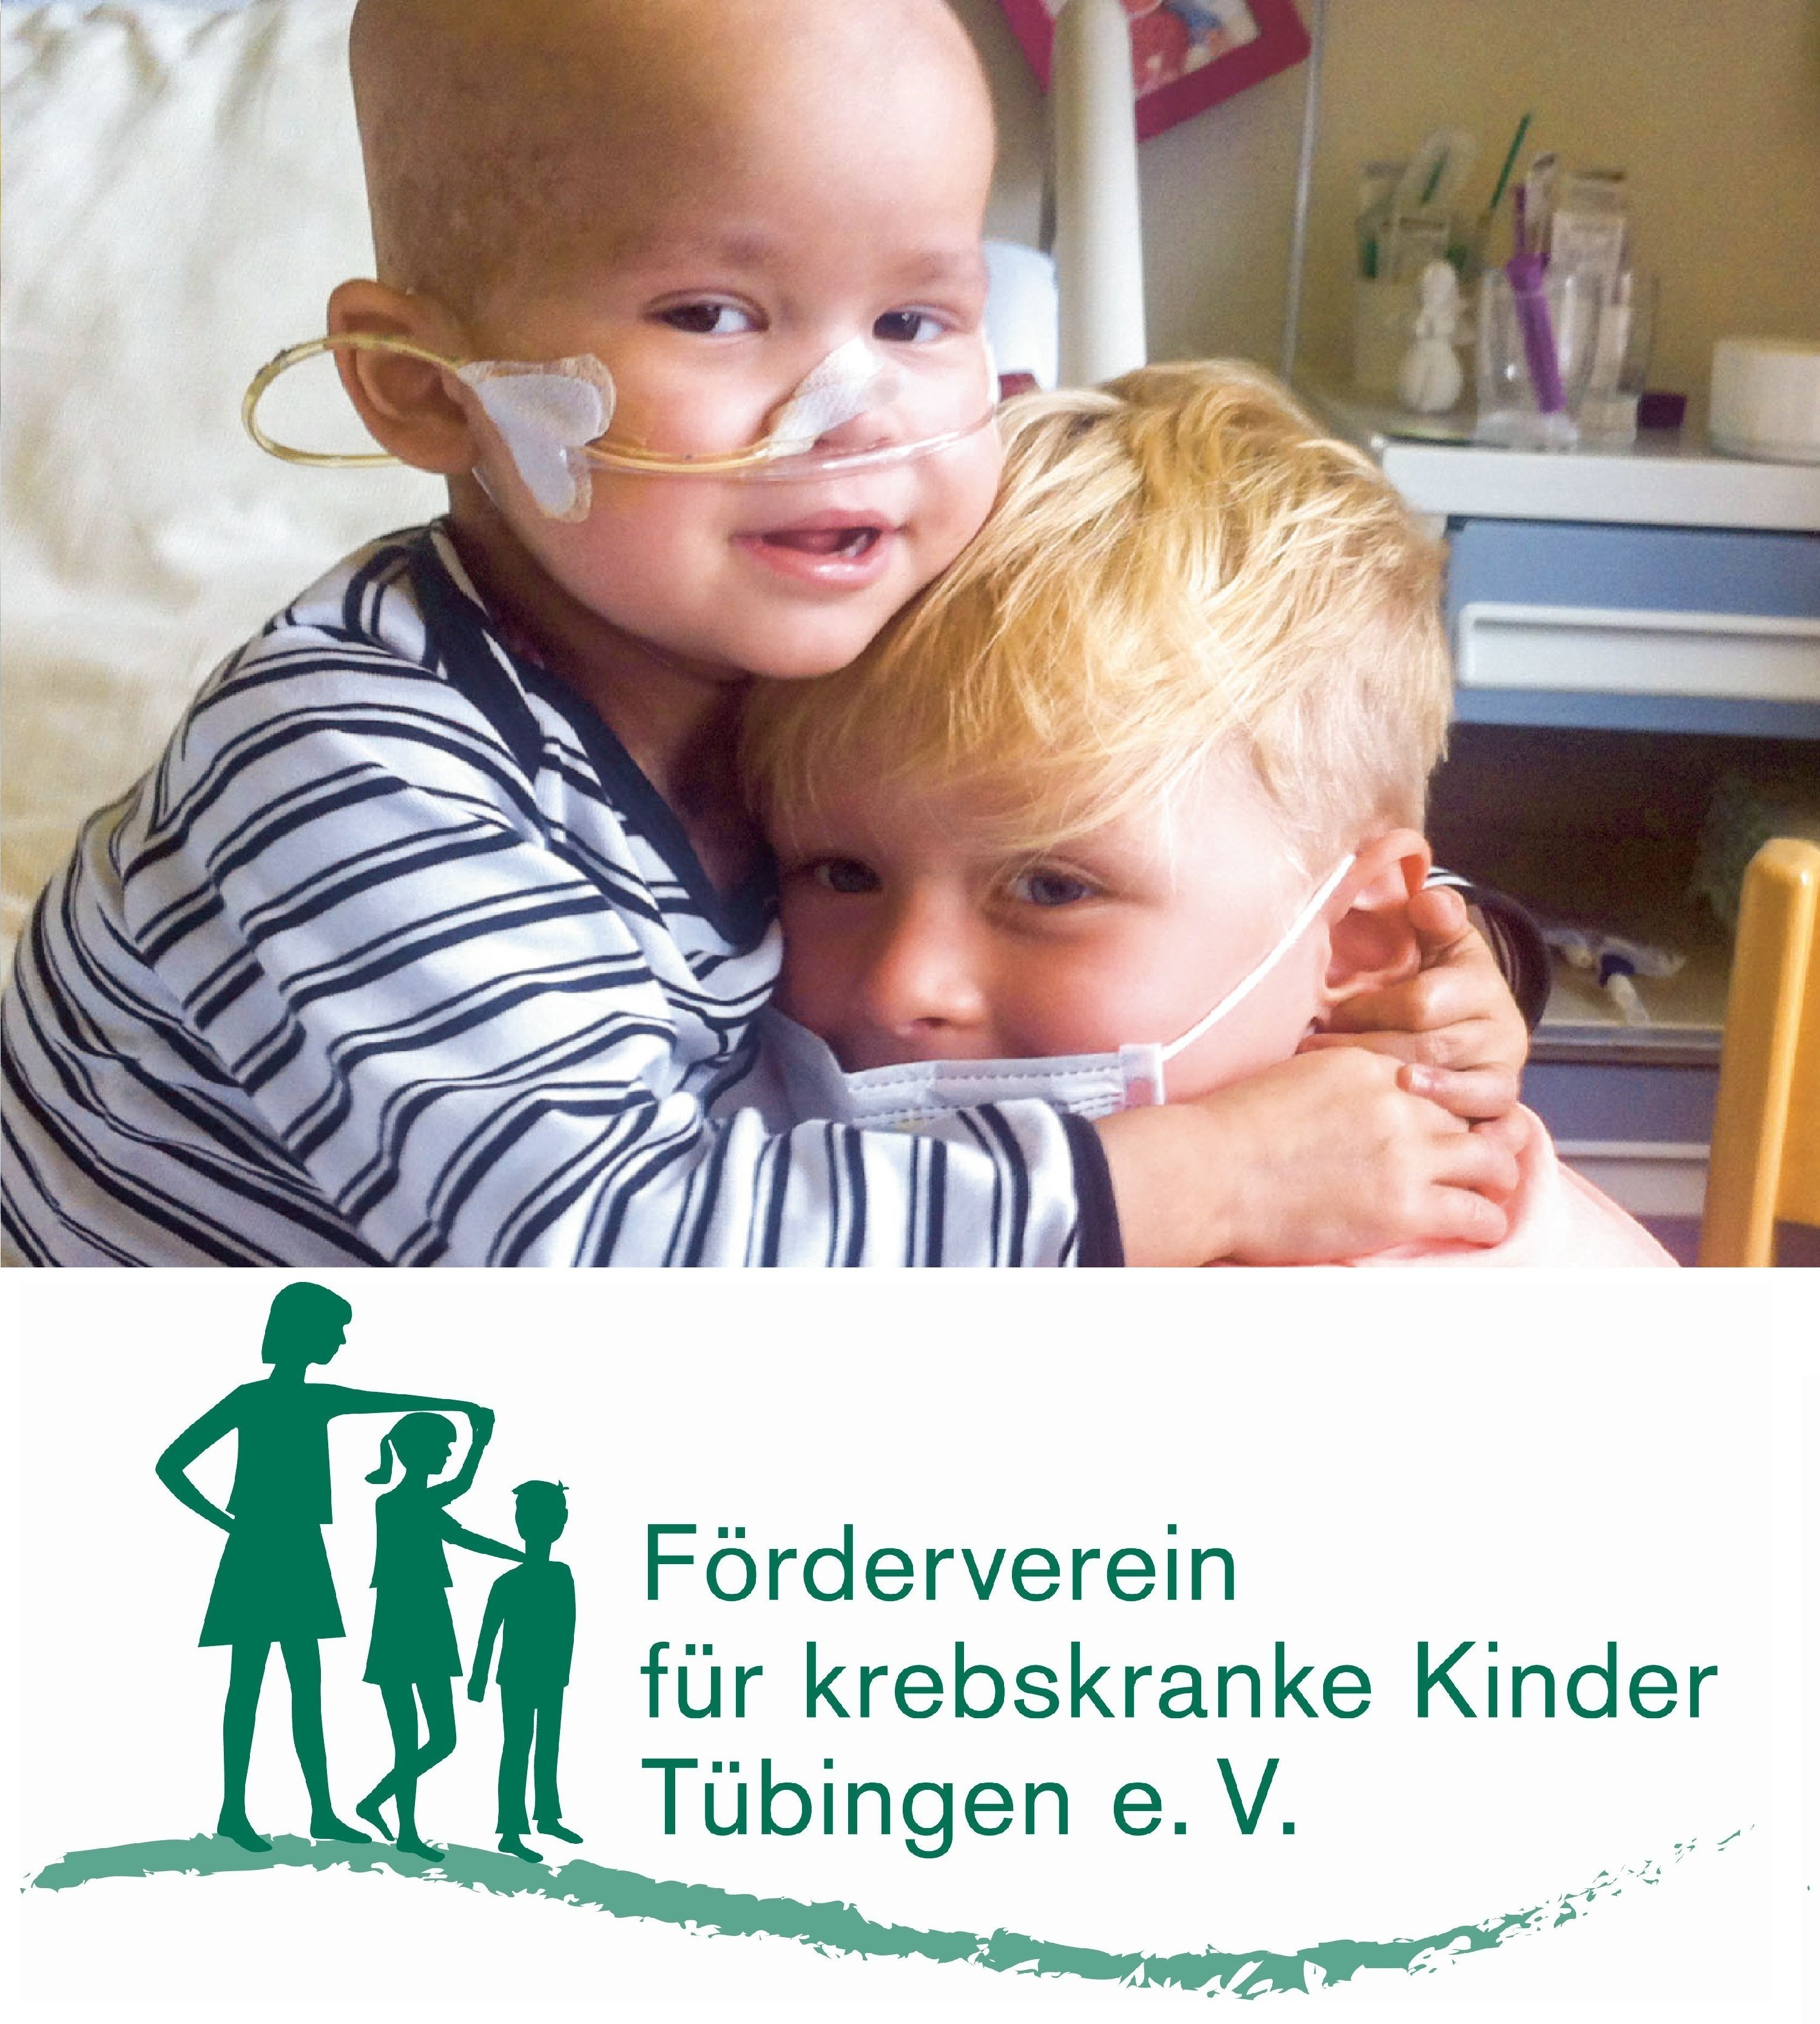 Der Förderverein für krebskranke Kinder Tübingen e. V. unterstützt und begleitet seit über 38 Jahren krebskranke Kinder und ihre Familien.